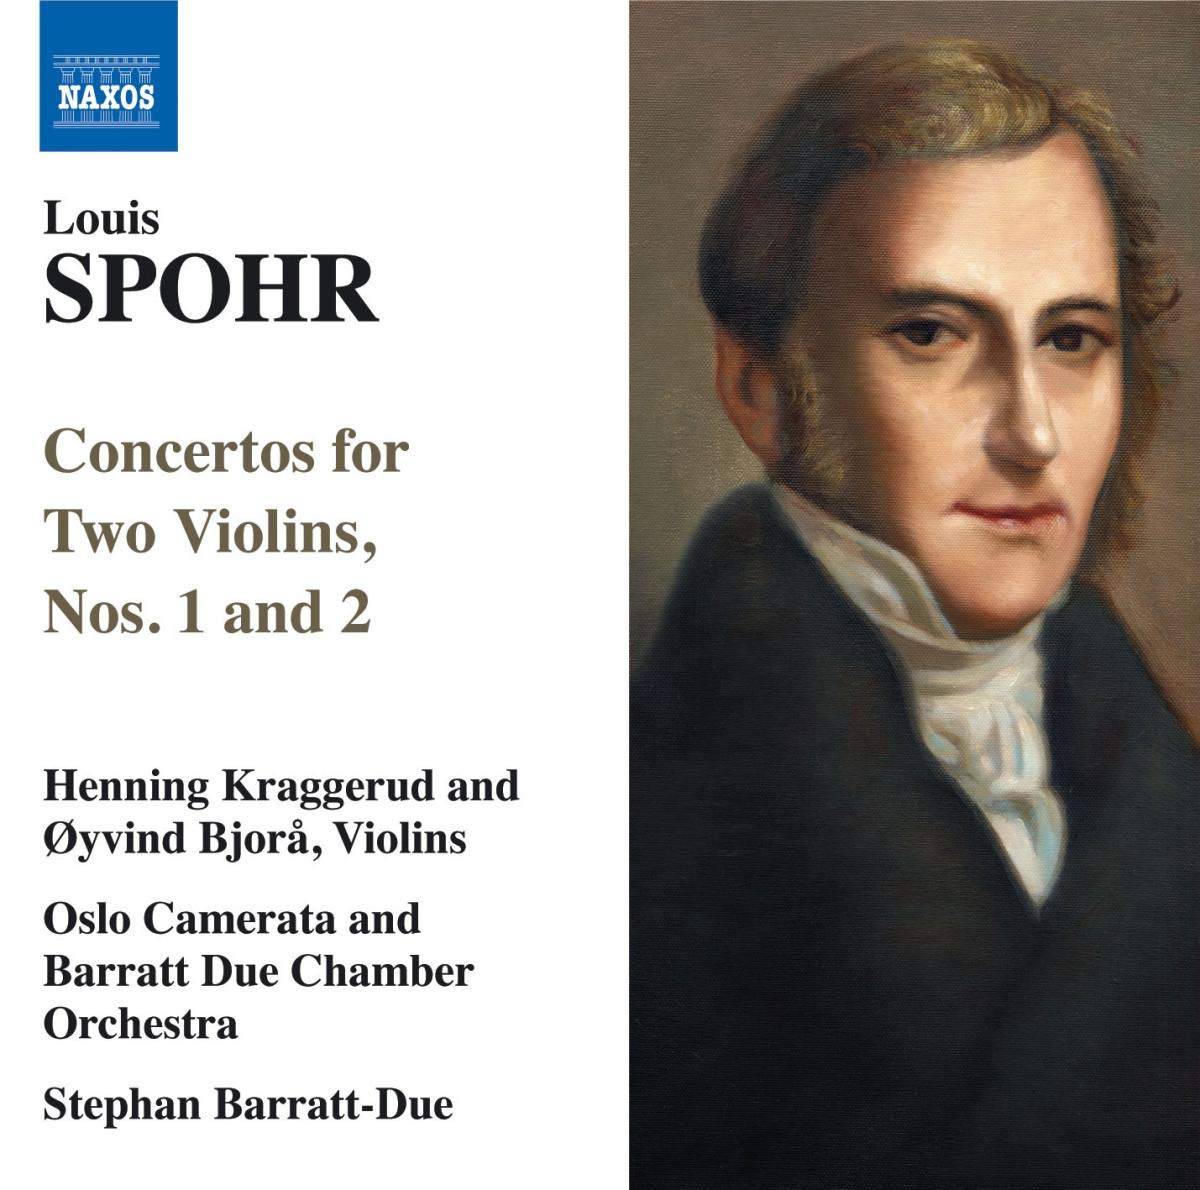 SPOHR: Concertos for 2 violins